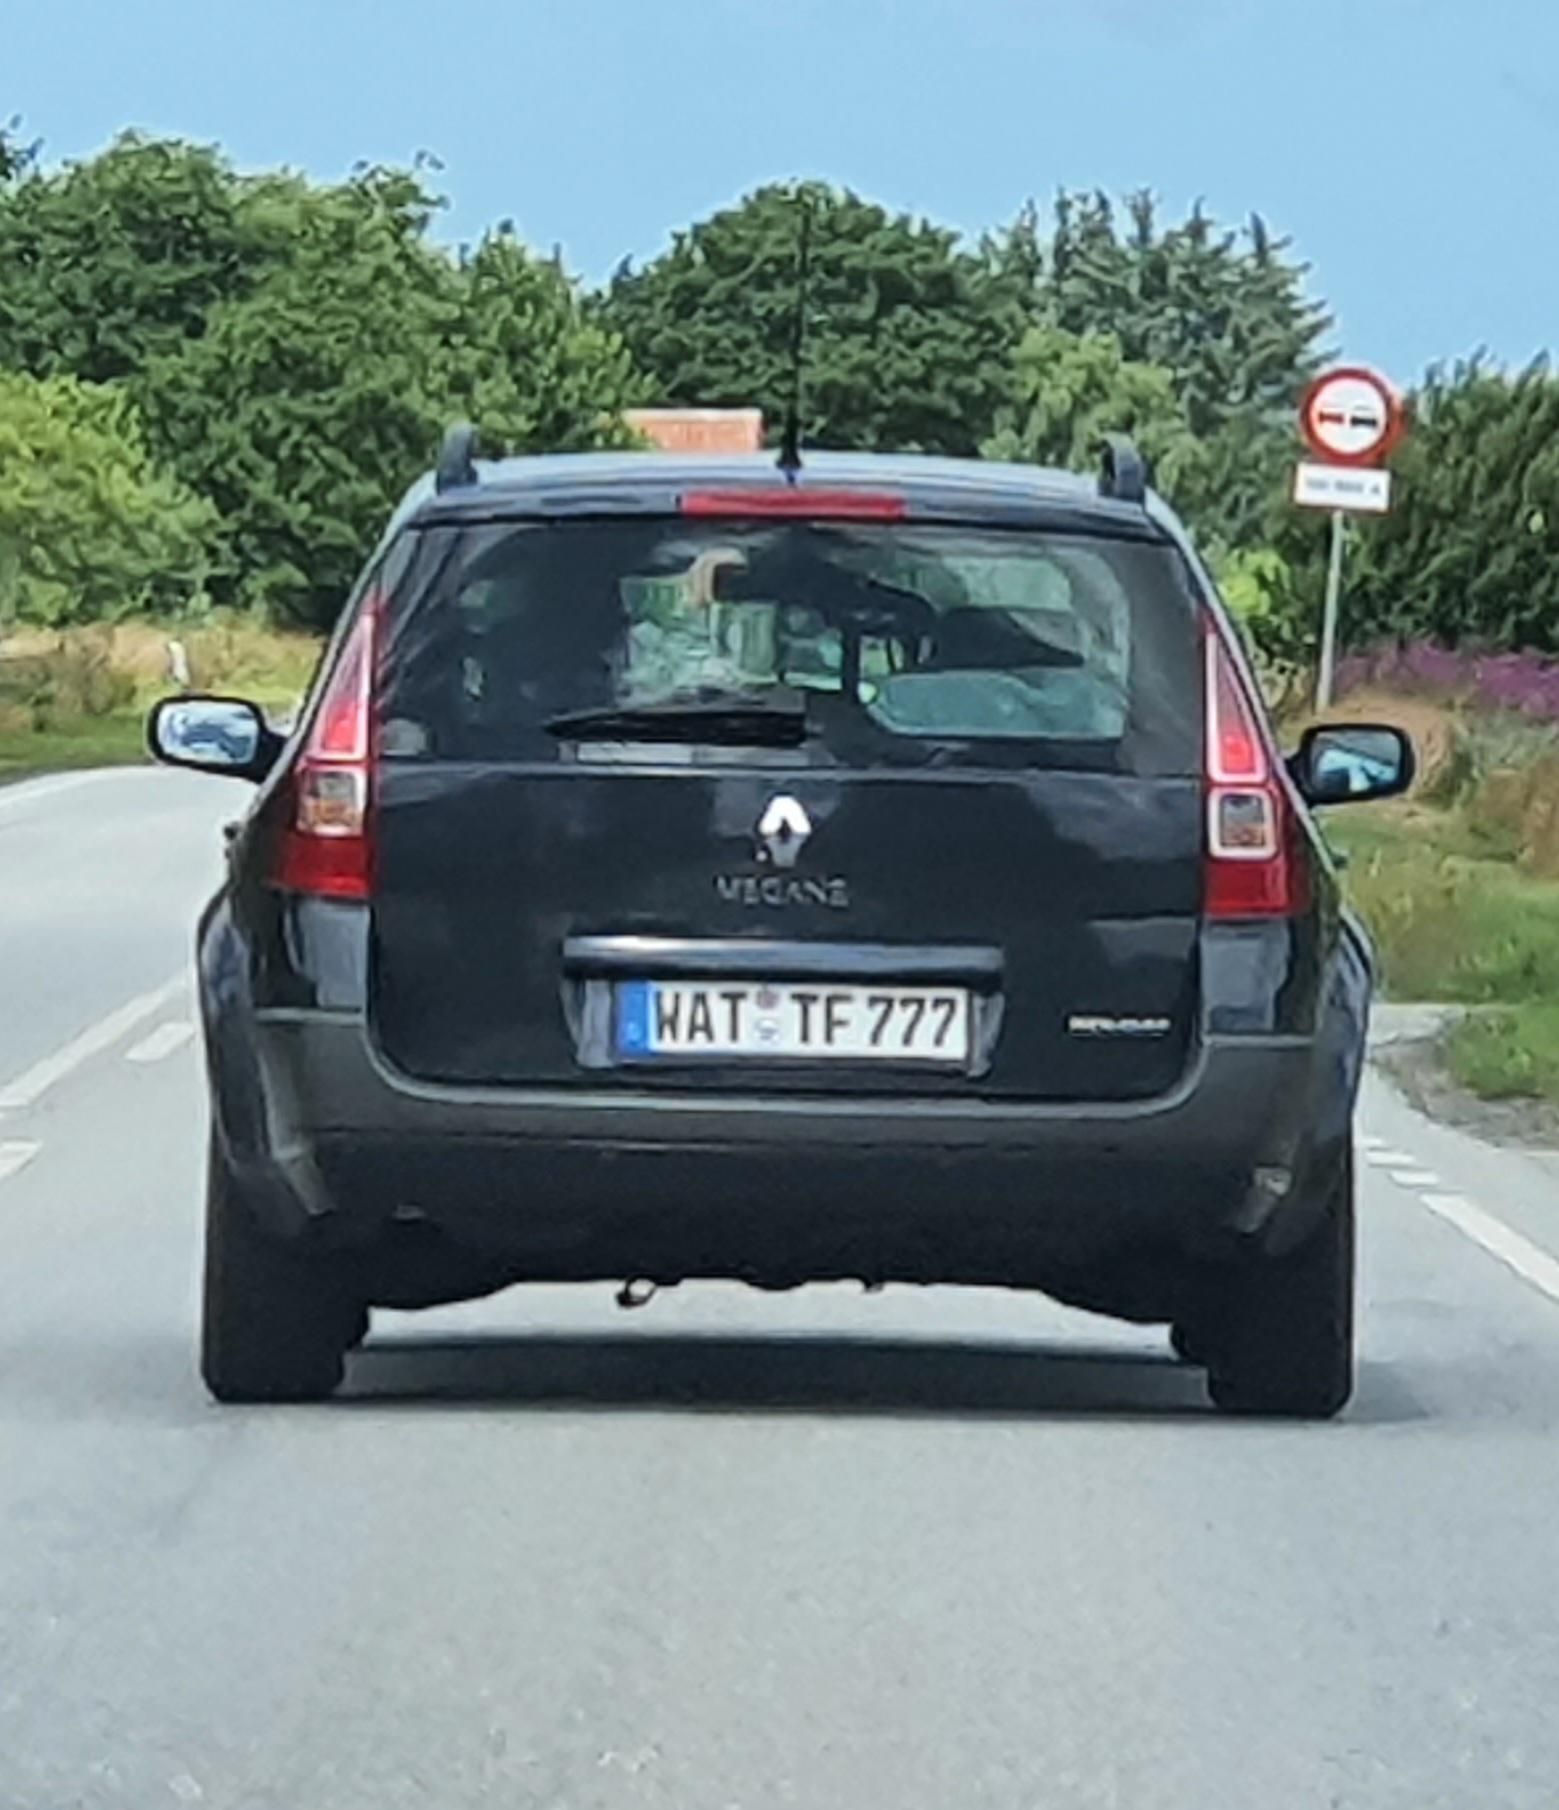 German numberplate.